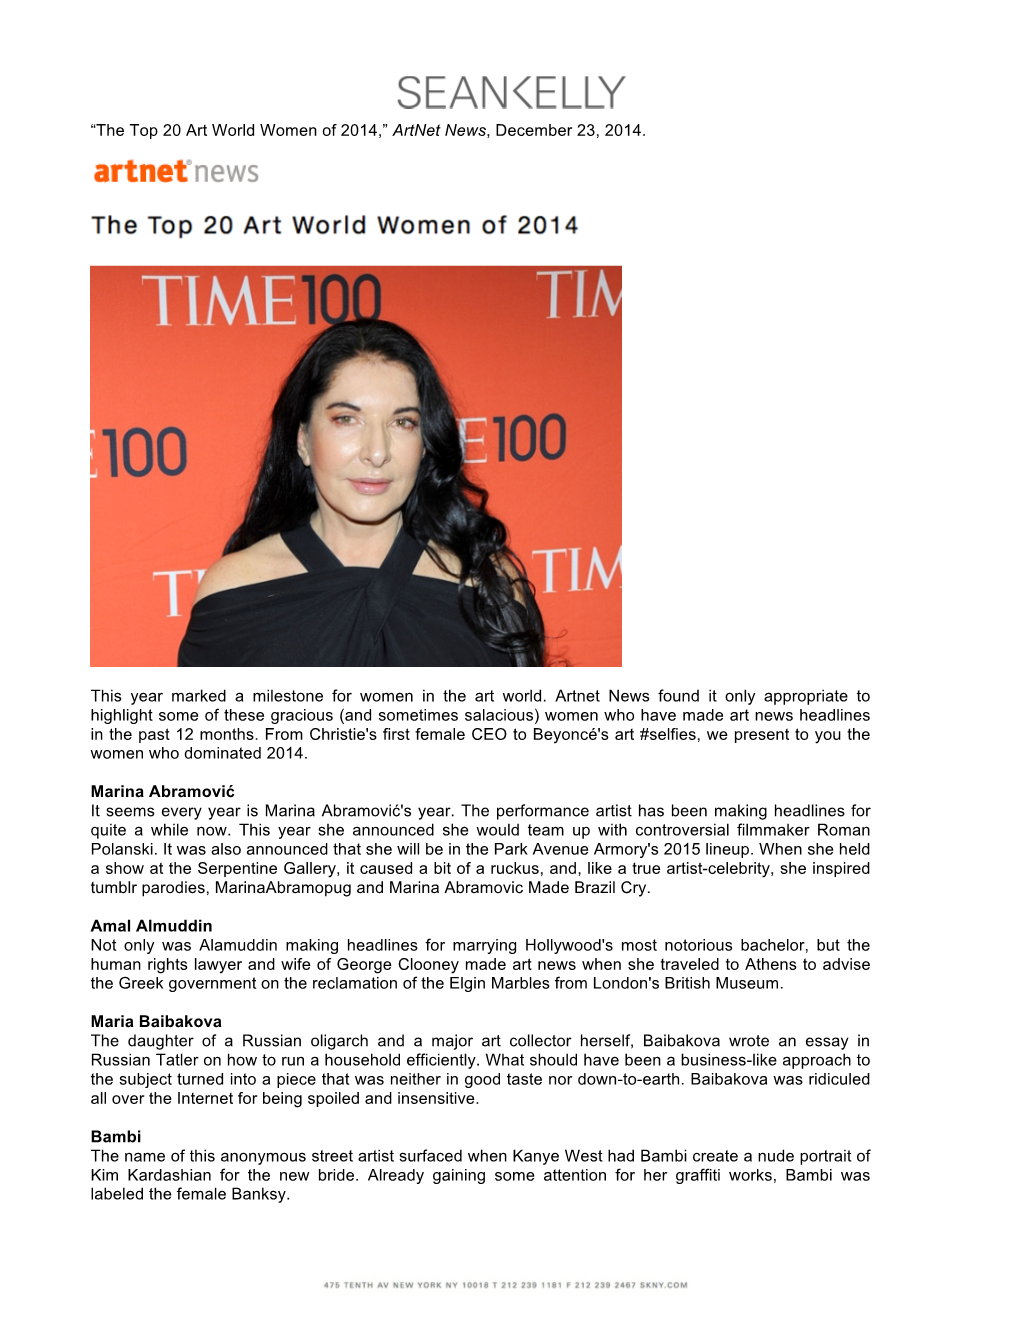 The Top 20 Art World Women of 2014 Artnet News, December 23, 2014